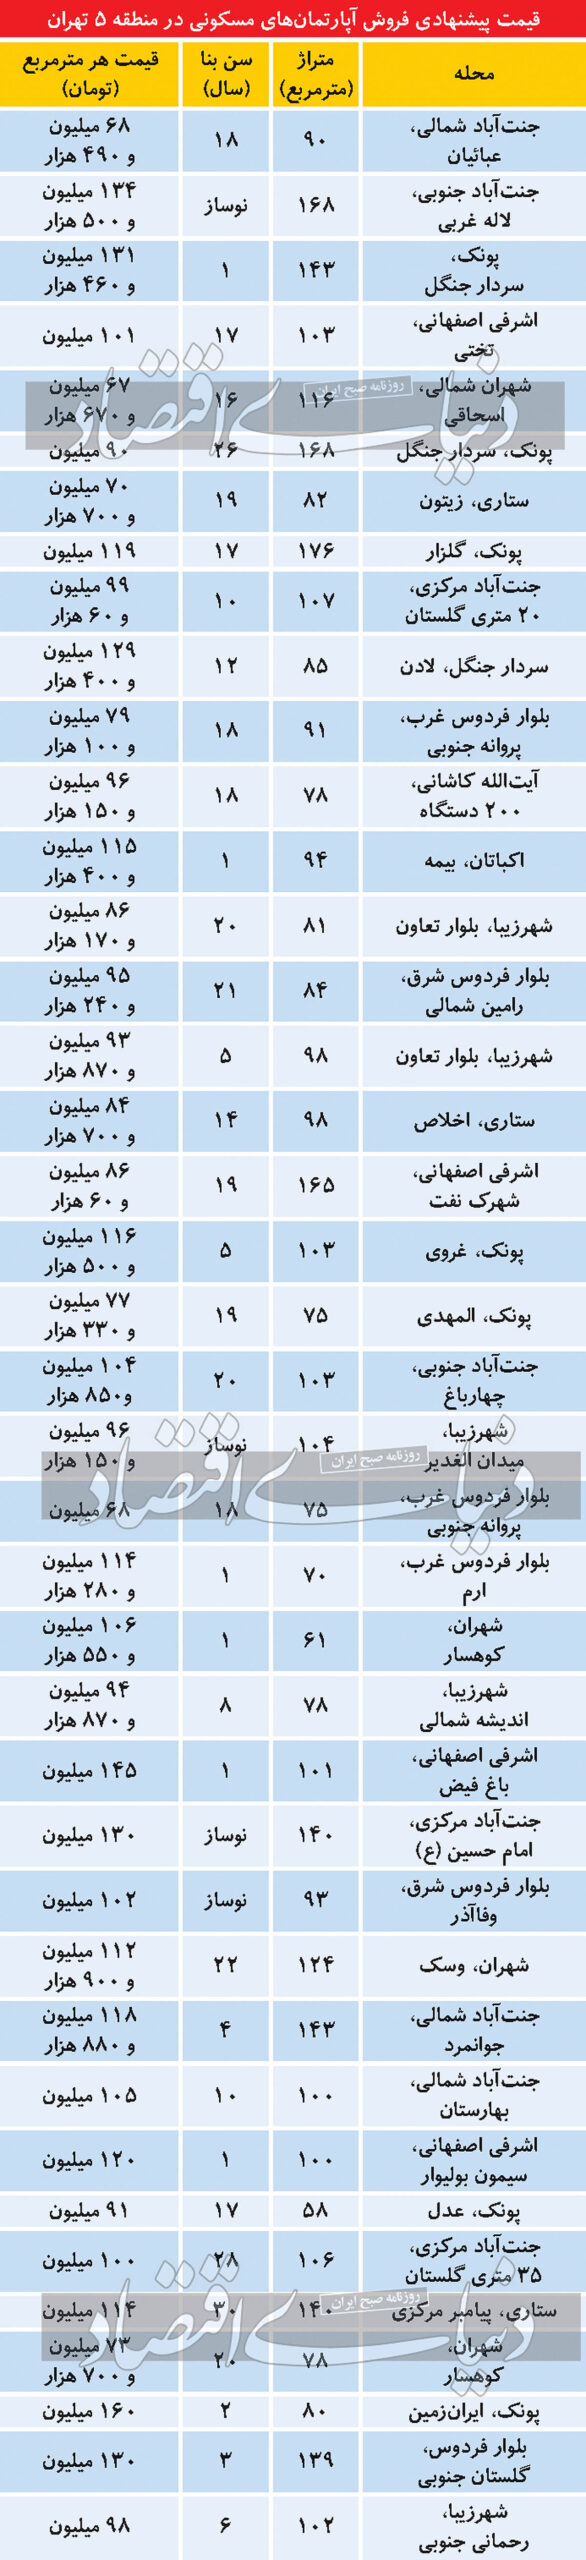 قیمت روز آپارتمان منطقه ۵ تهران